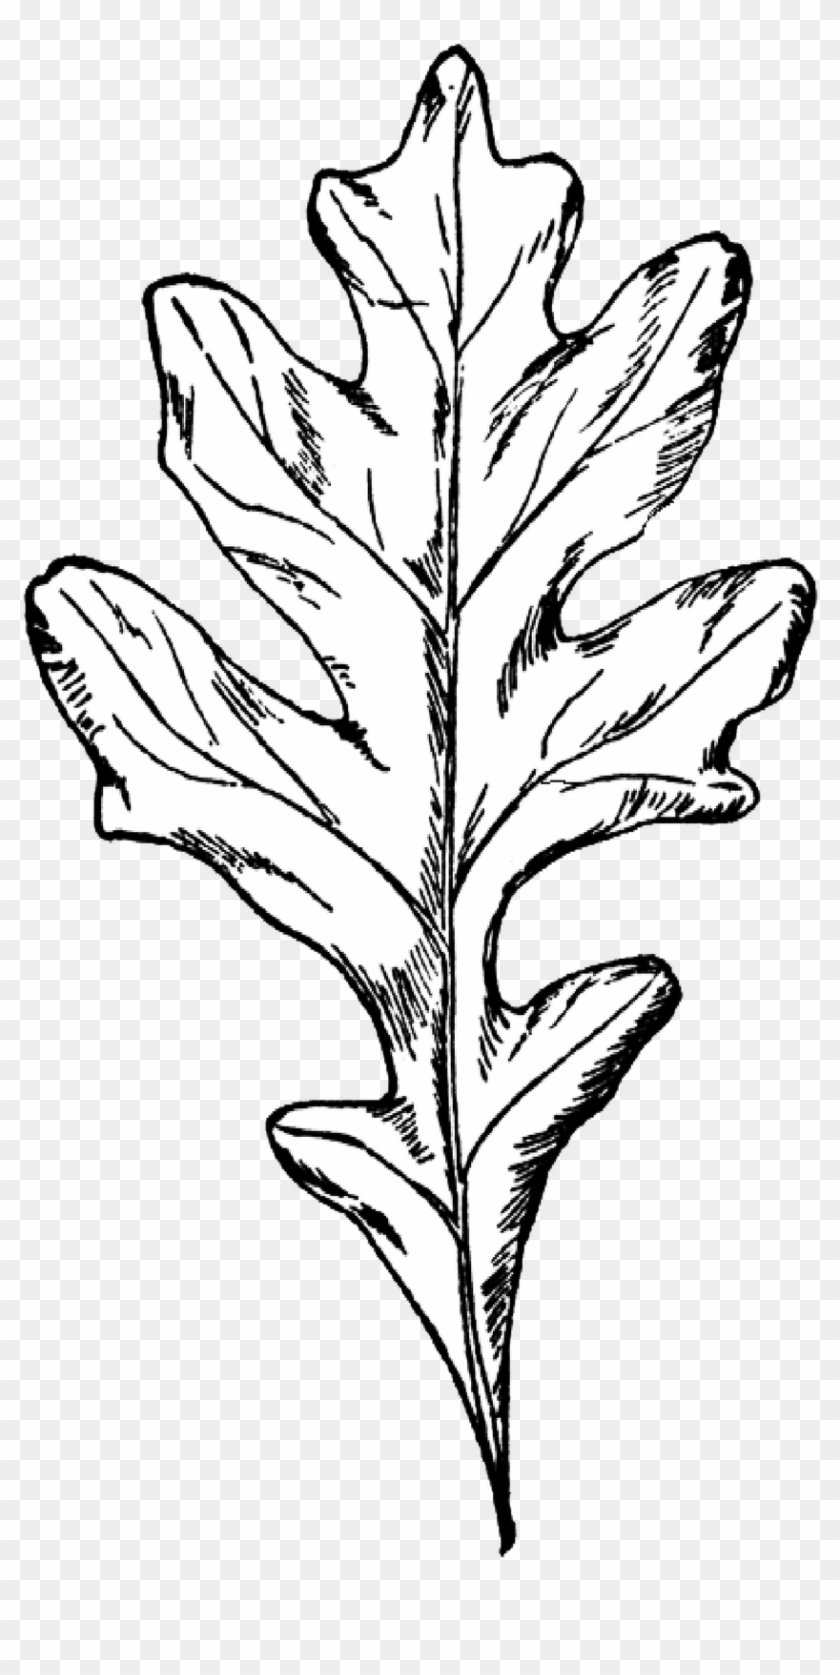 Drawn Foliage Red Oak Leaf - White Oak Leaf Clip Art #401350